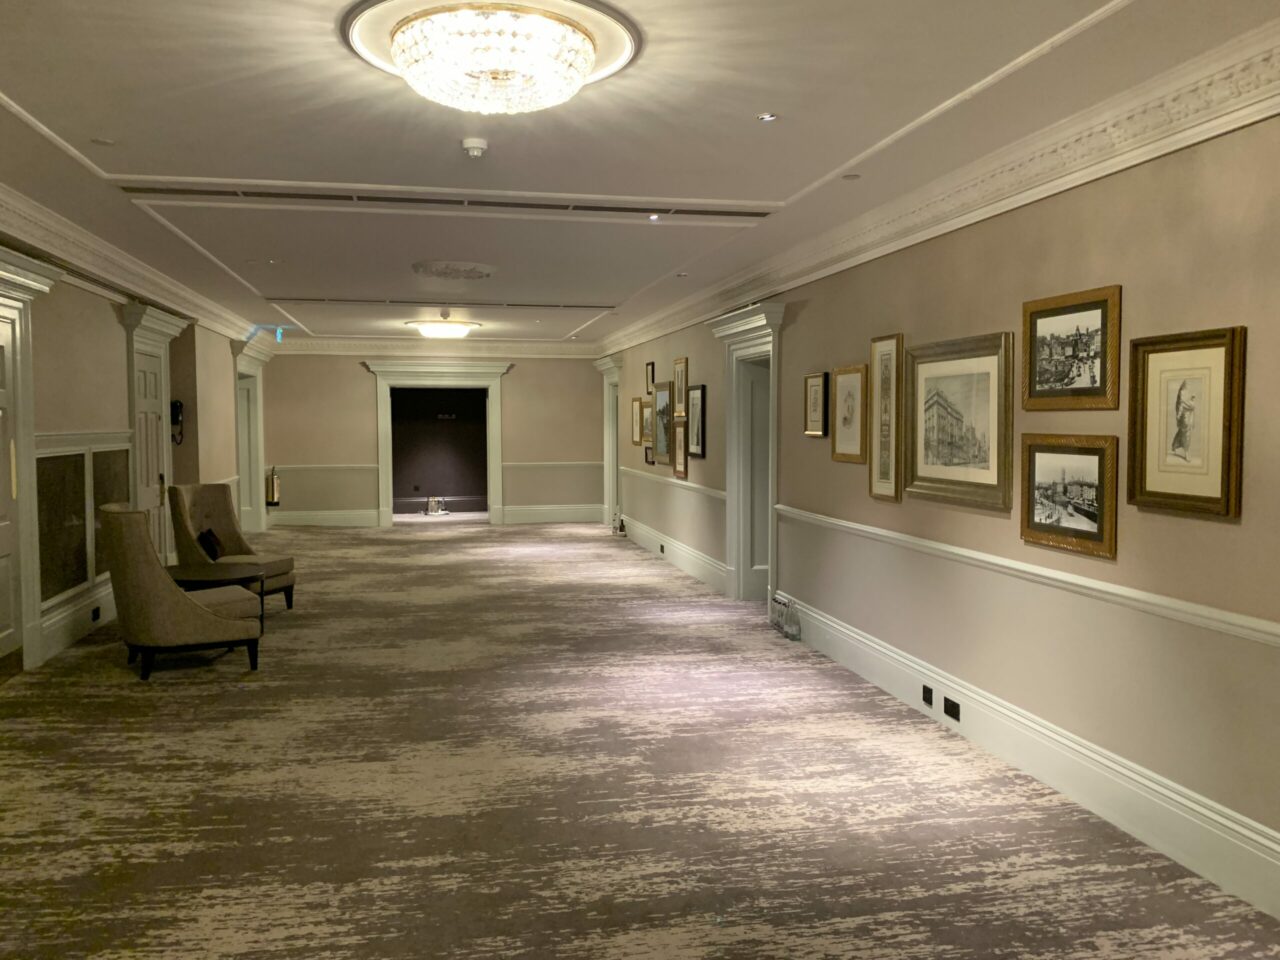 Marriott Royal Hotel Bristol painting corridors 